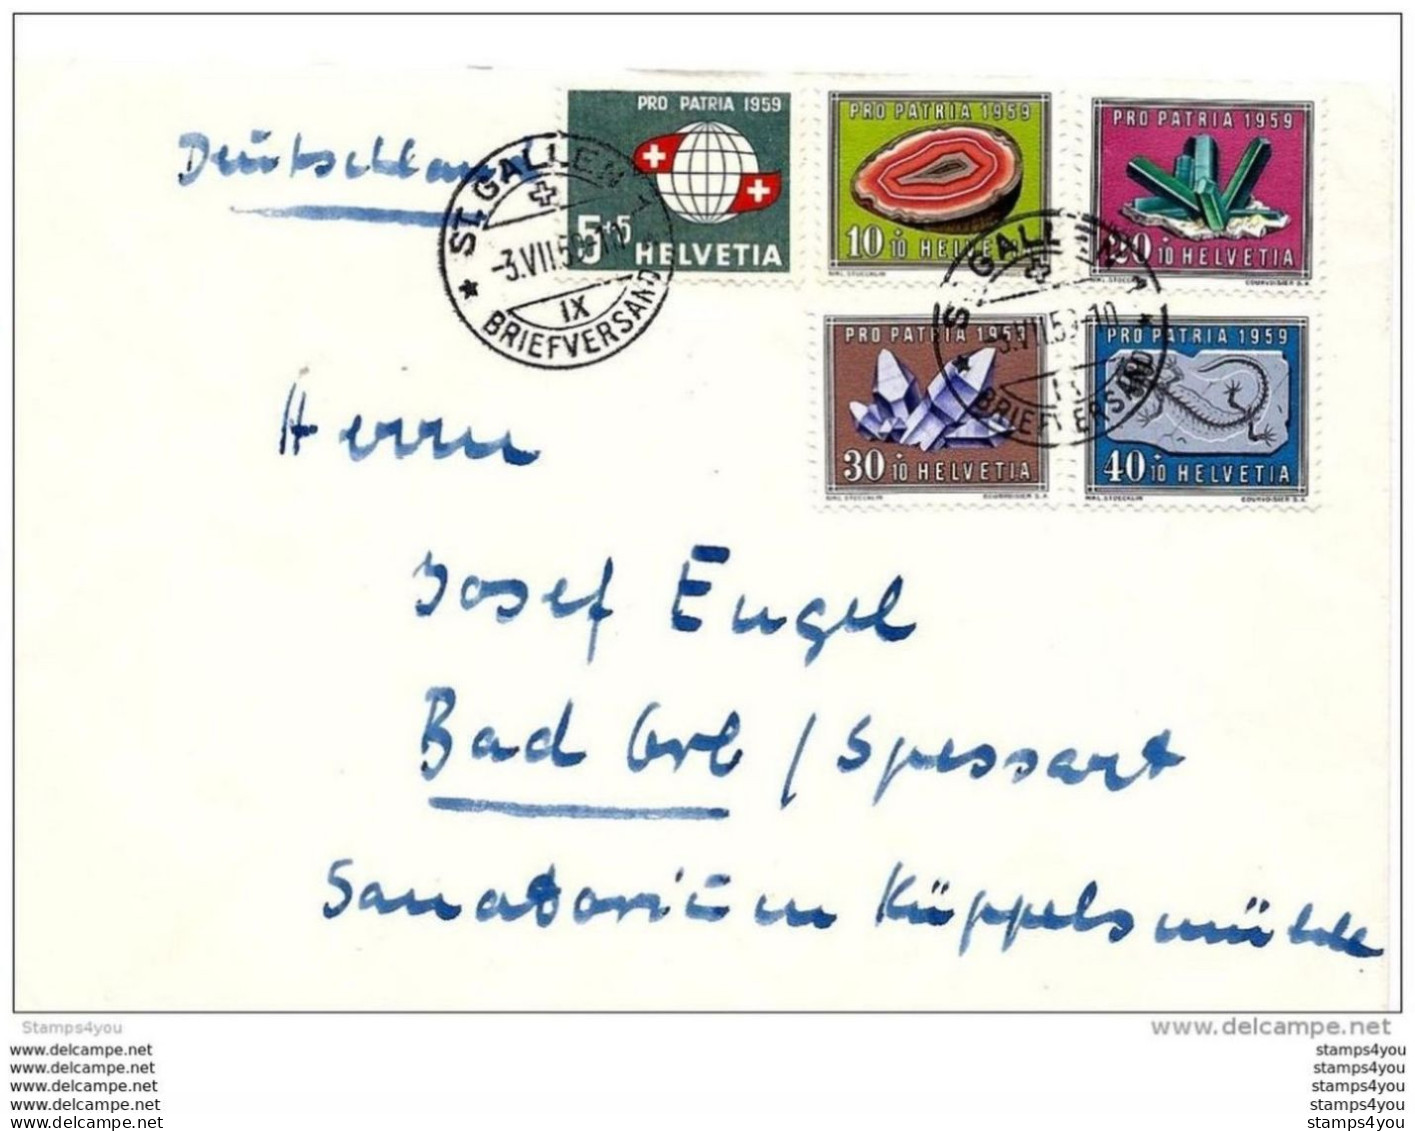 100 - 71 - Enveloppe Envoyée De St Gallern En Allemagne - 1959 Avec Série Pro Patria - Lettres & Documents